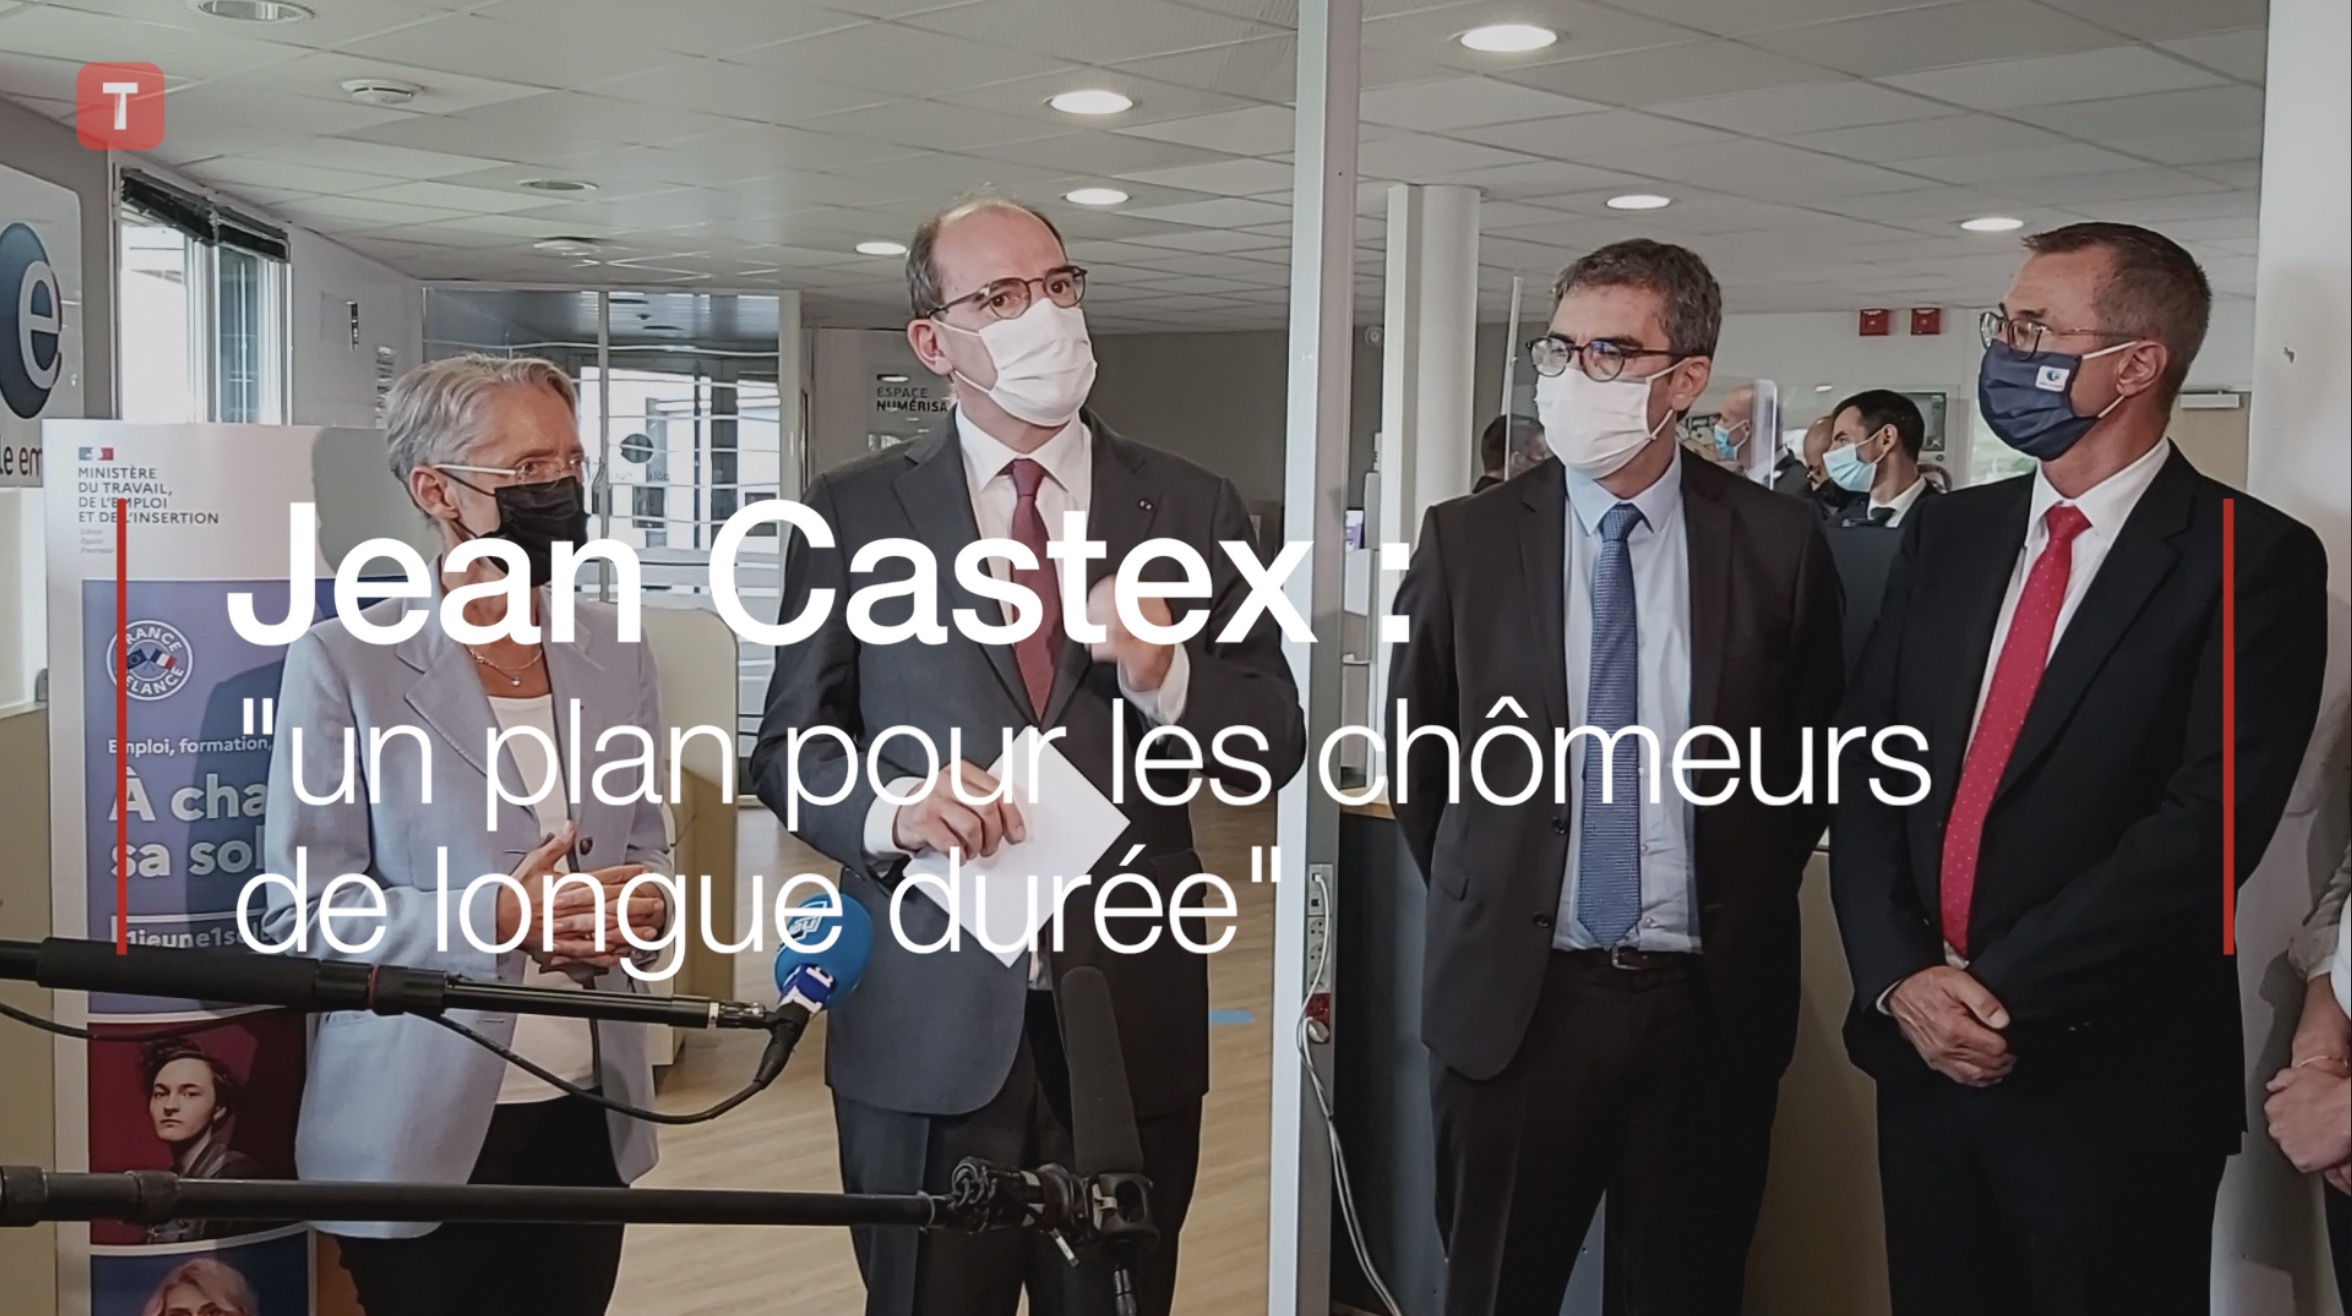 Saint-Brieuc. Jean Castex annonce "un plan pour les chômeurs de longue durée" (Le Télégramme)